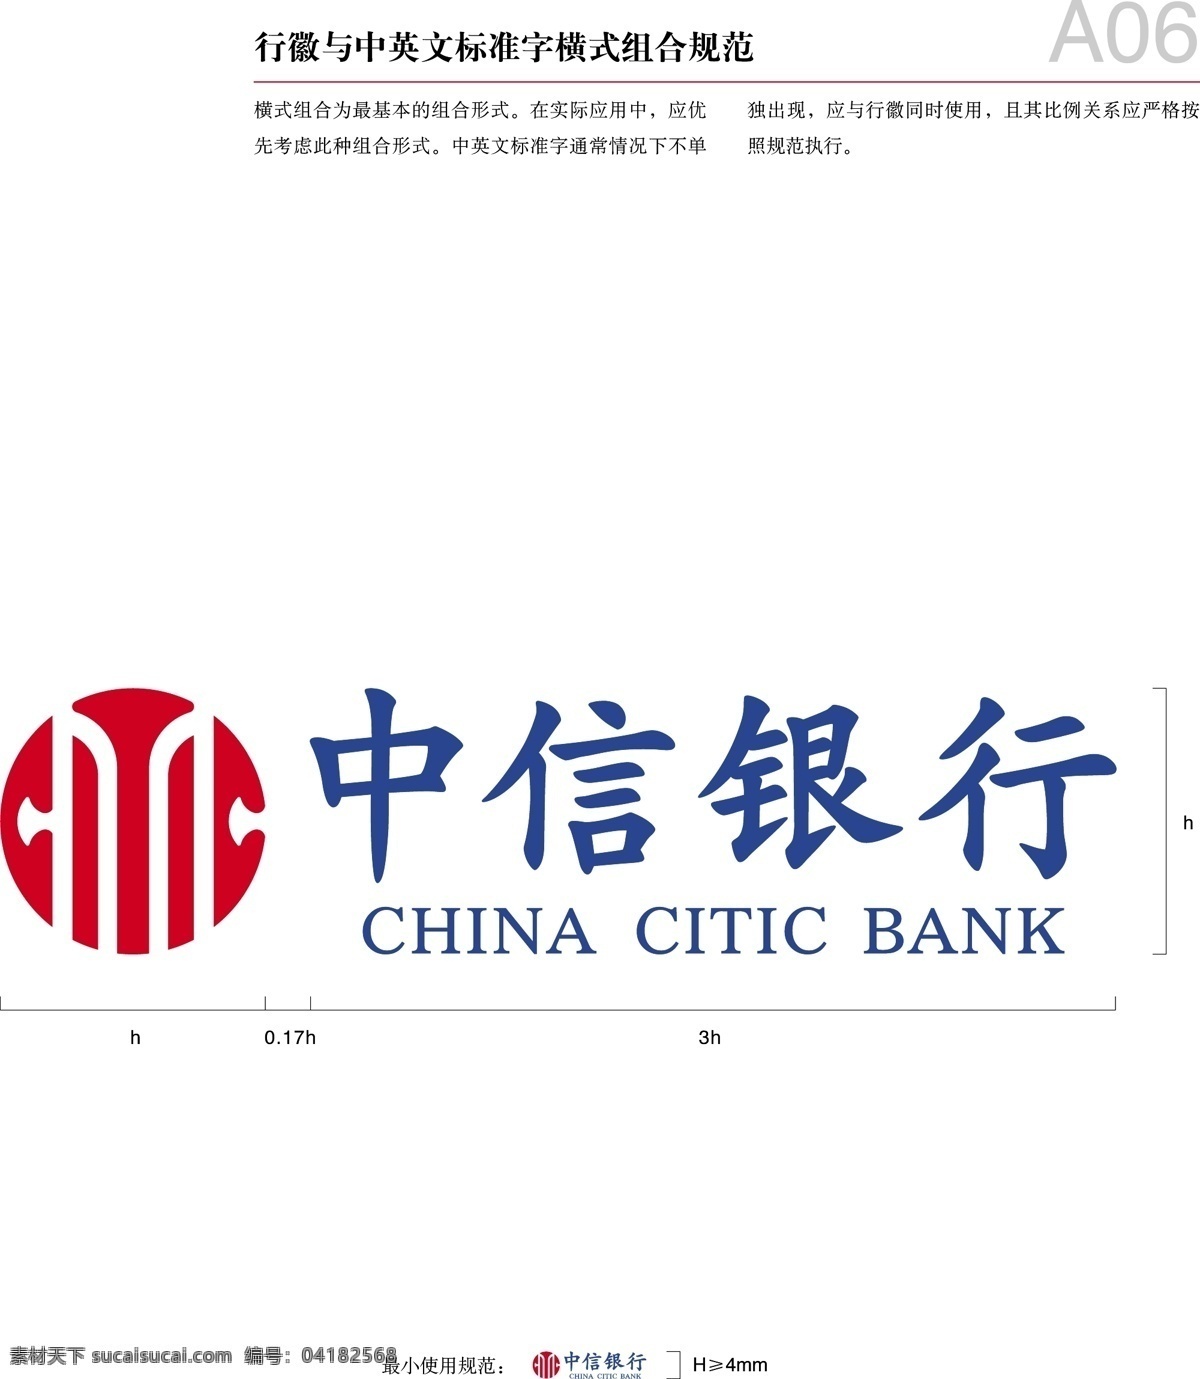 中信银行 横板 logo 中信 中信ai 中信logo 企业 标志 标识标志图标 矢量